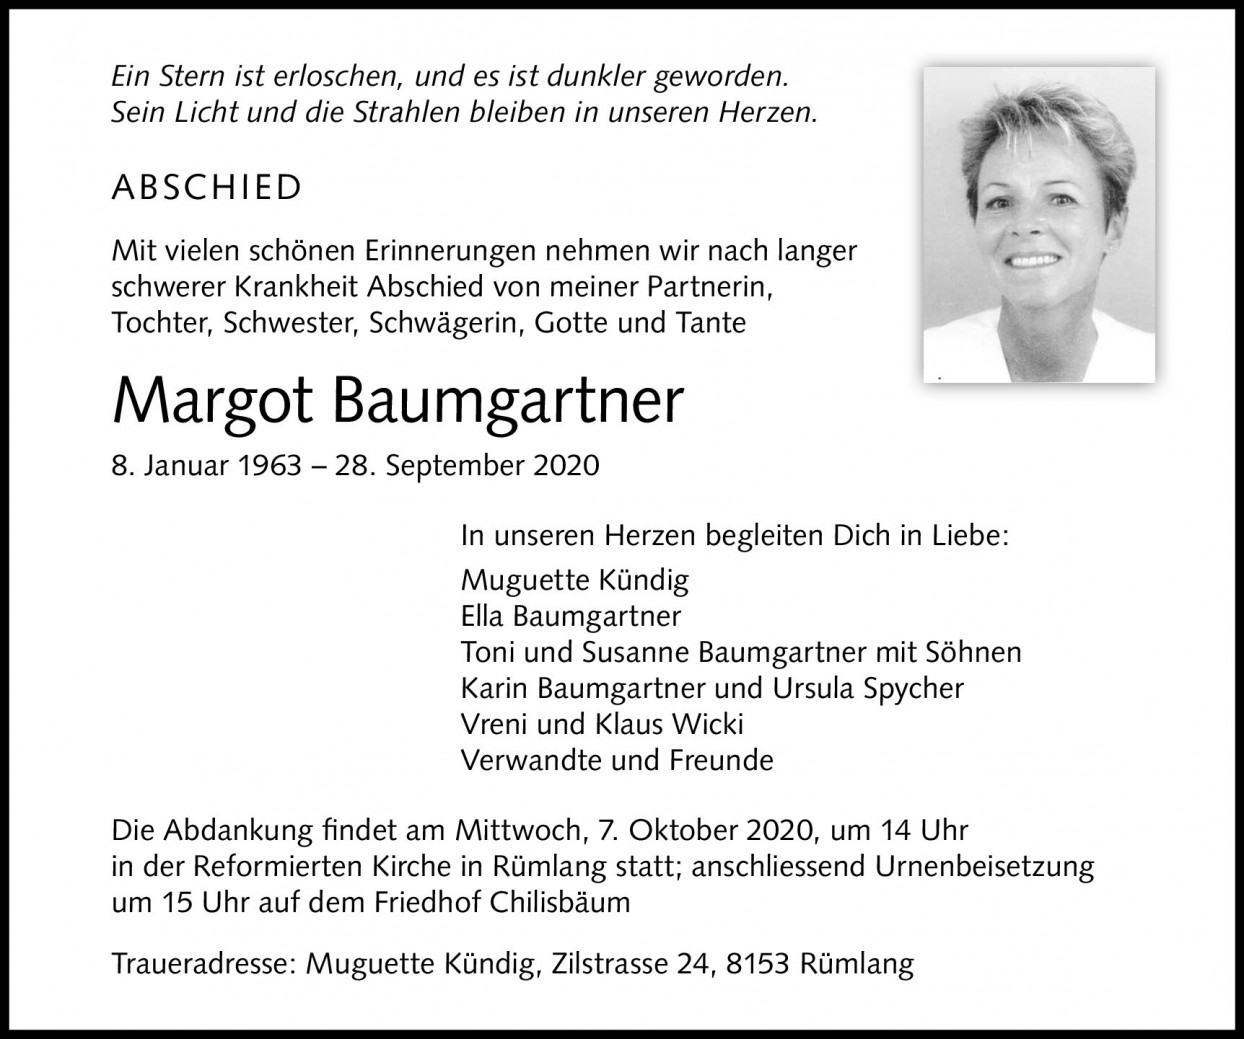 Margot Baumgartner